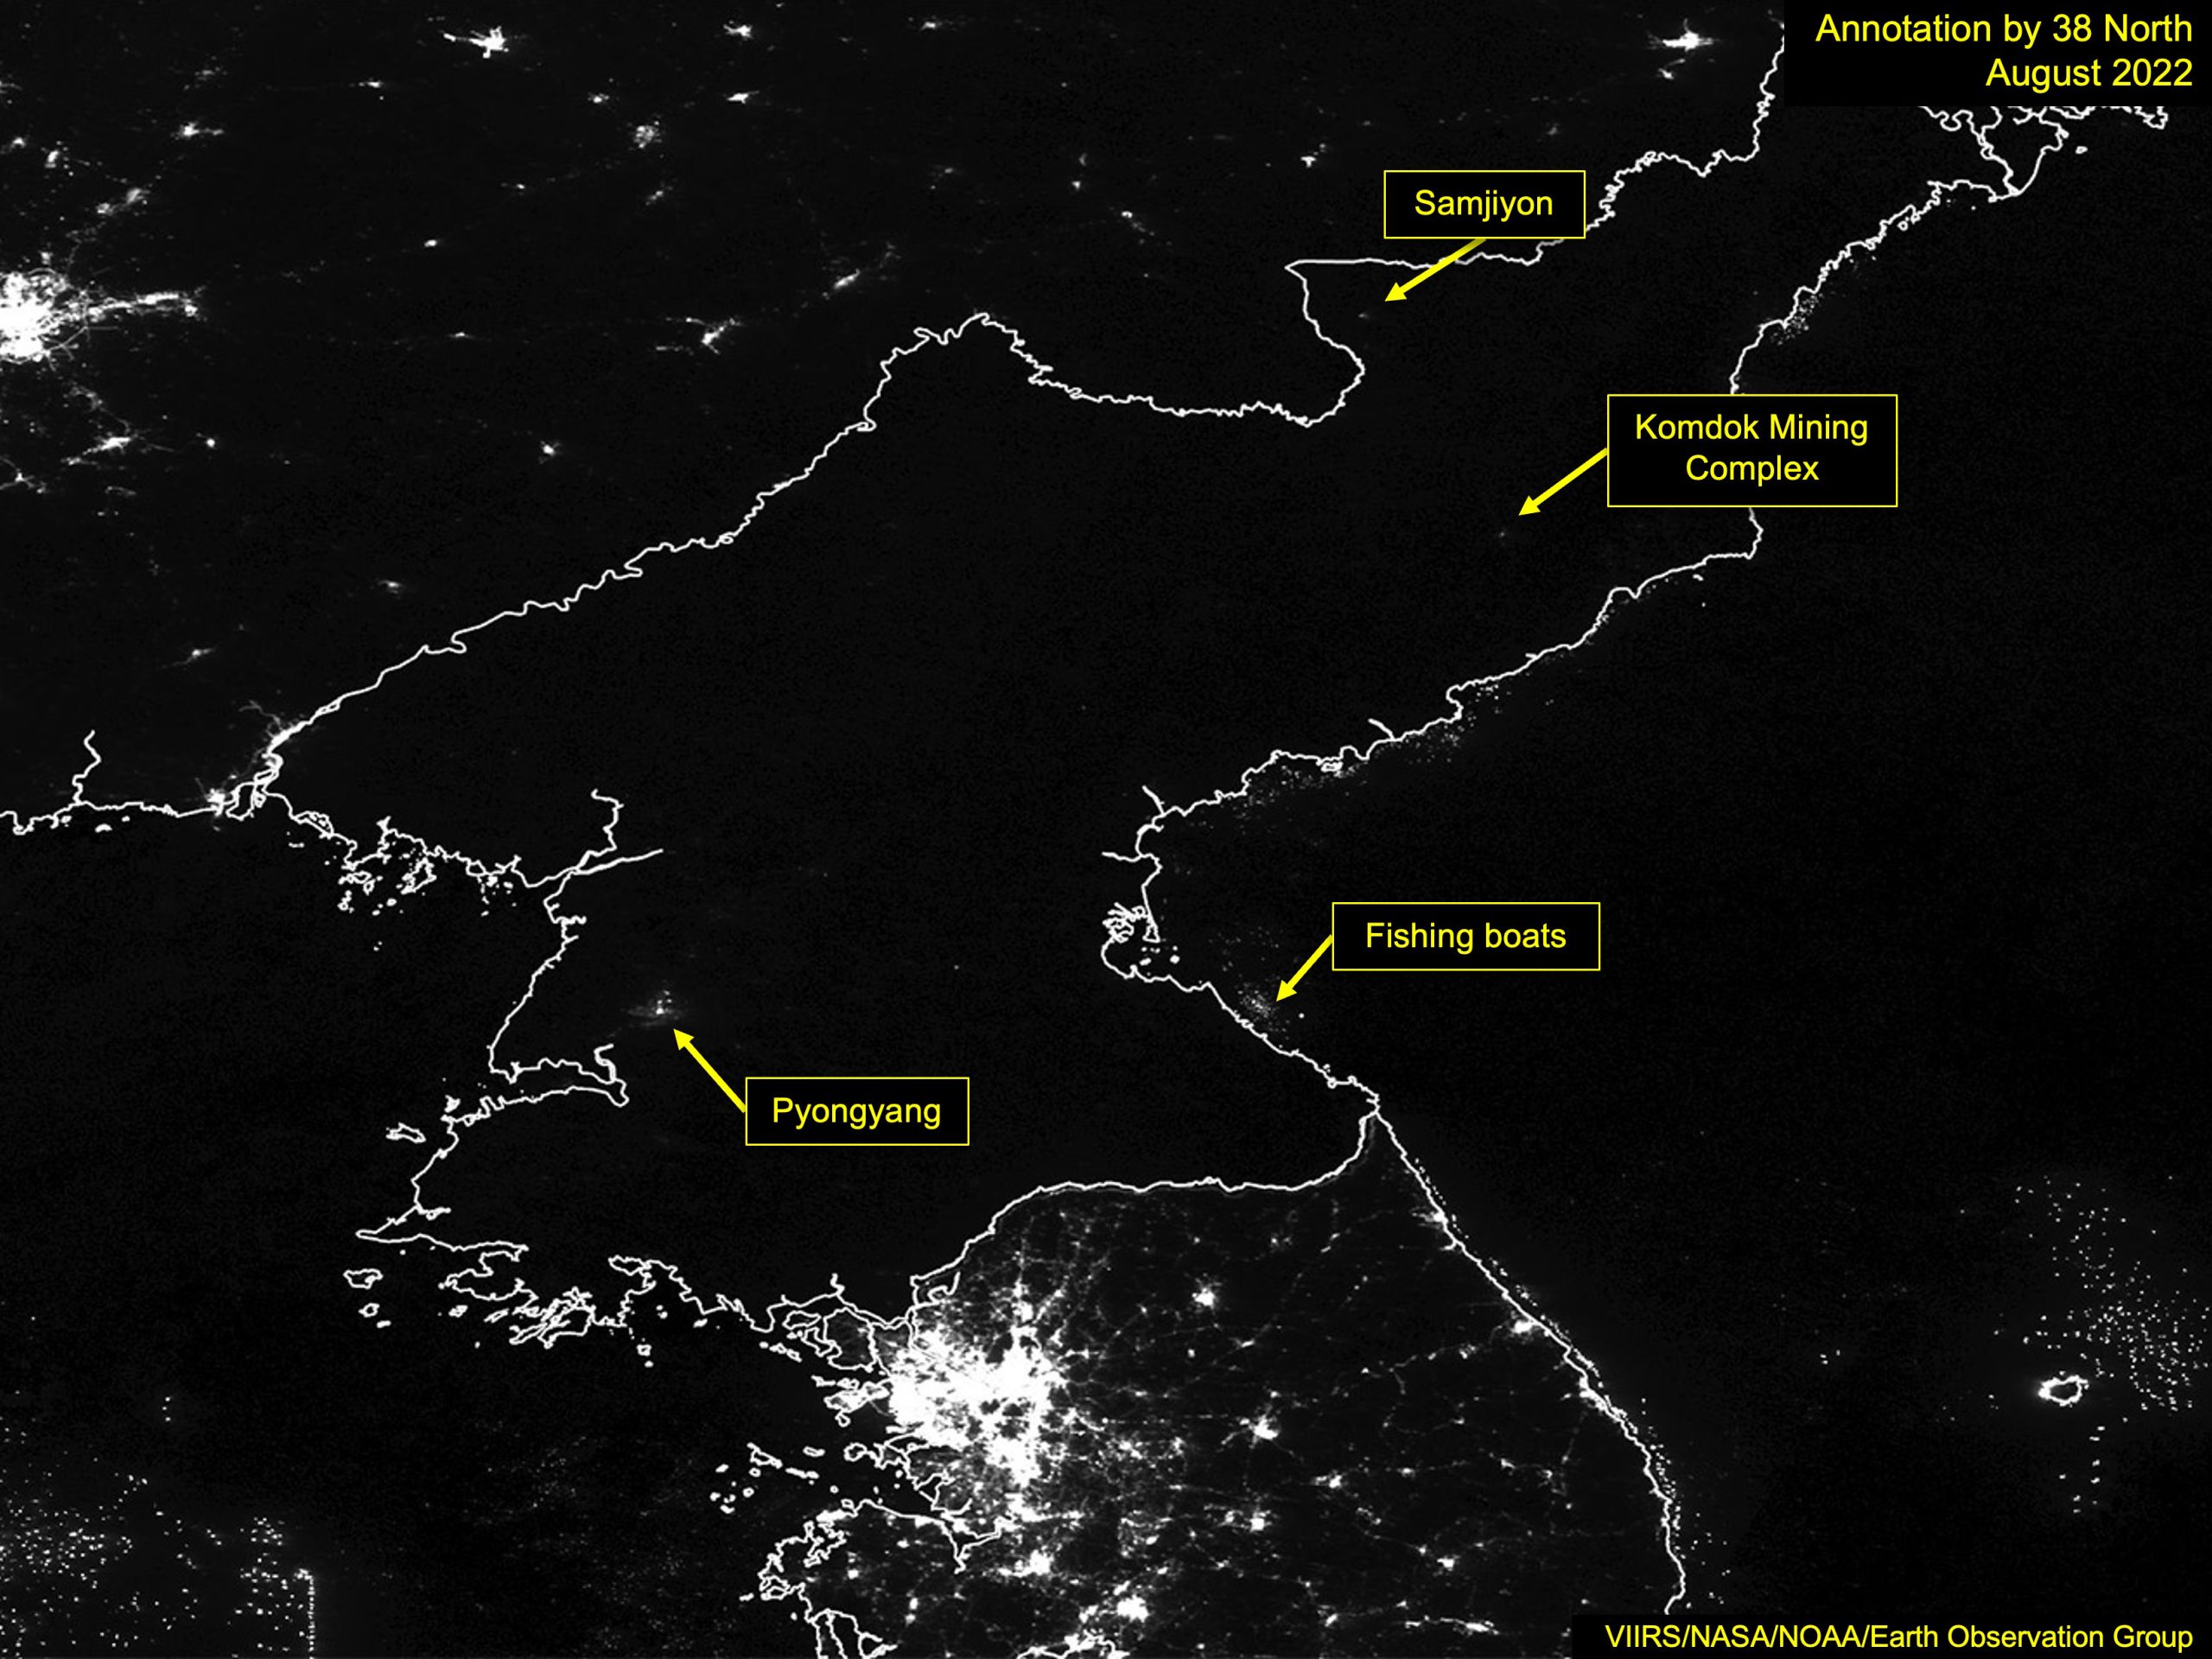 밤에 보는 북한의 새로운 모습